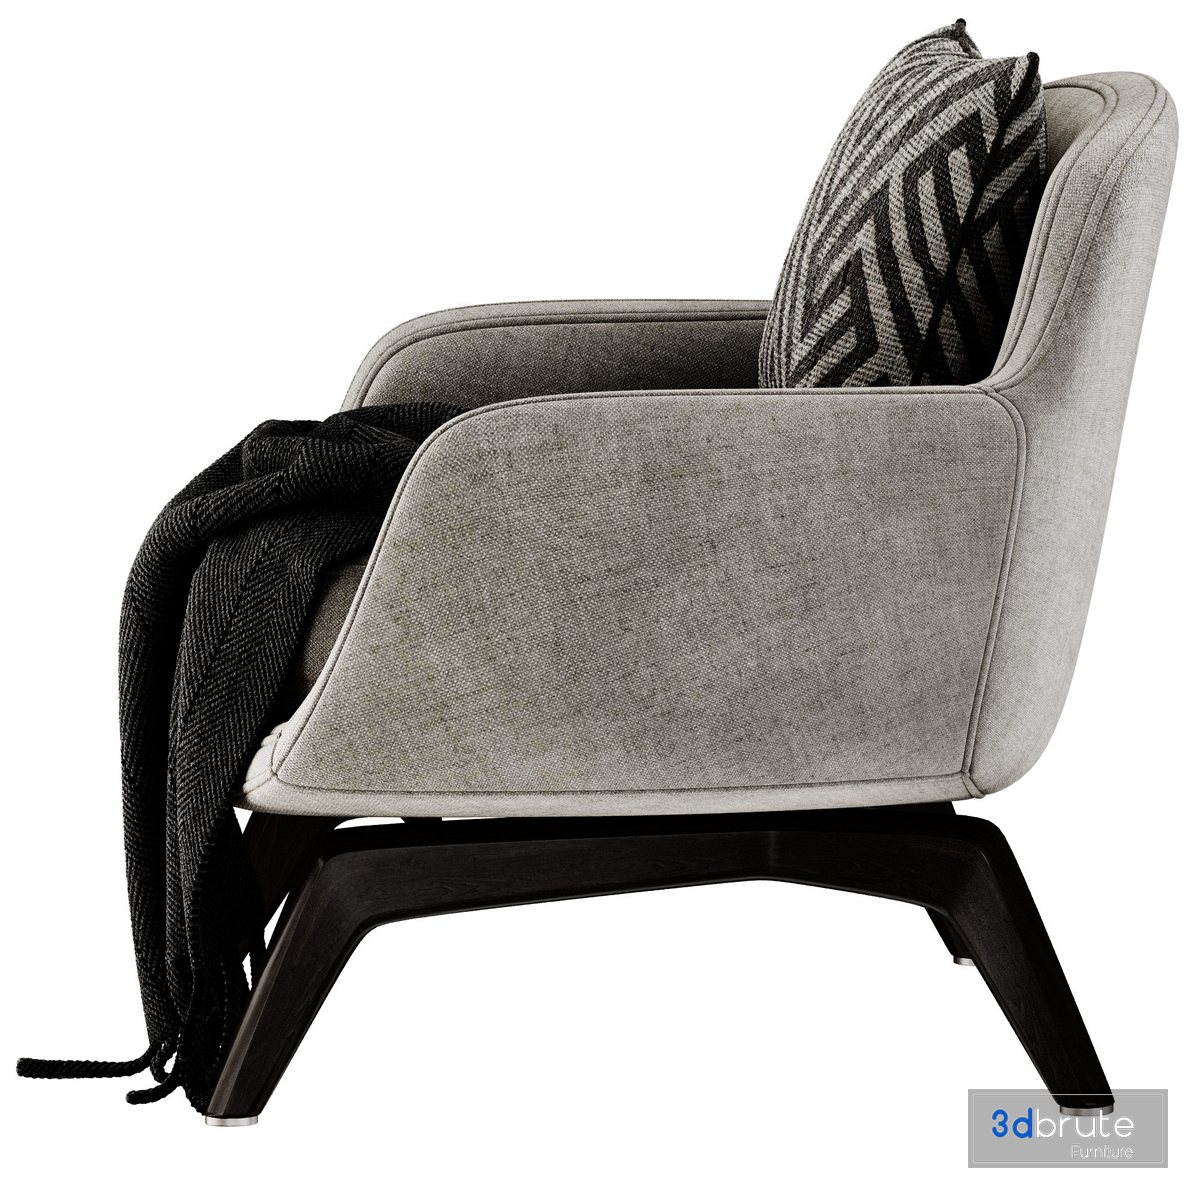 BELT Fabric armchair By Minotti 3d model Buy Download 3dbrute